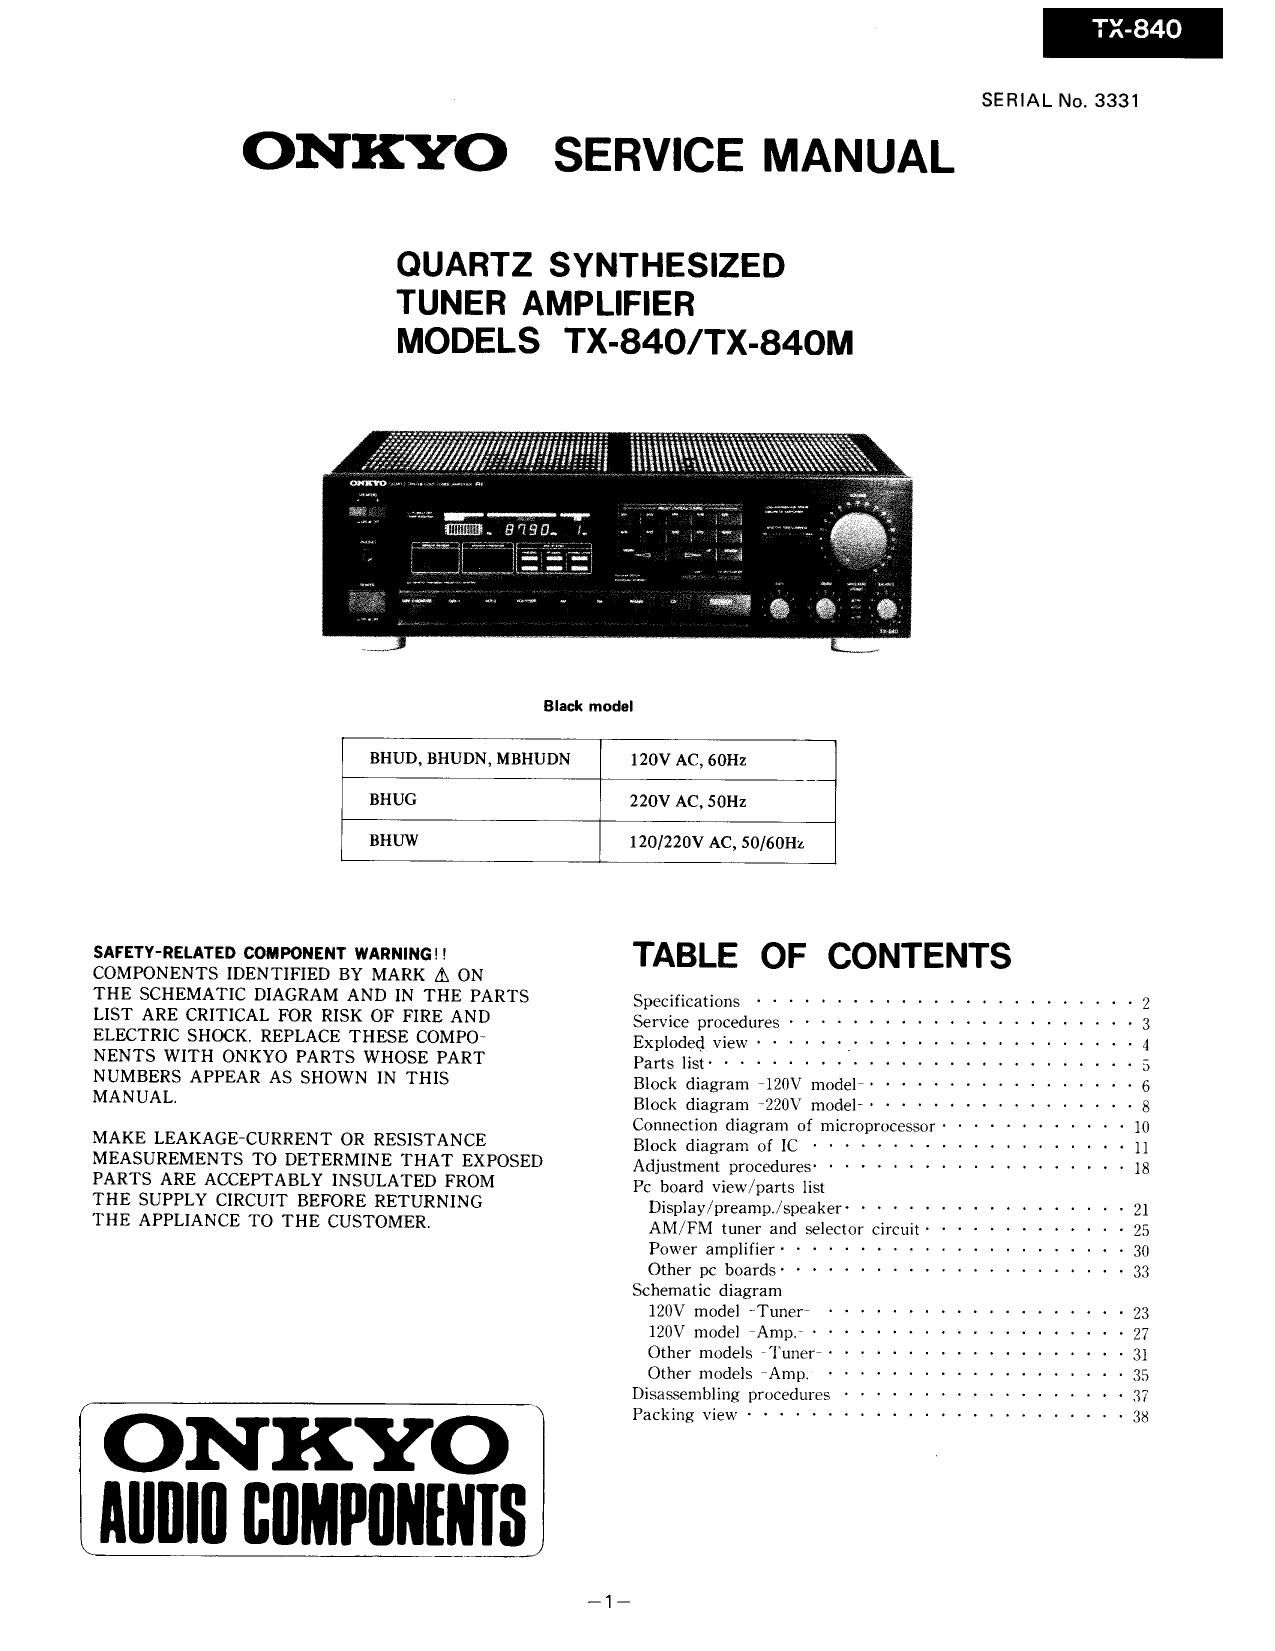 Onkyo TX 840 Service Manual